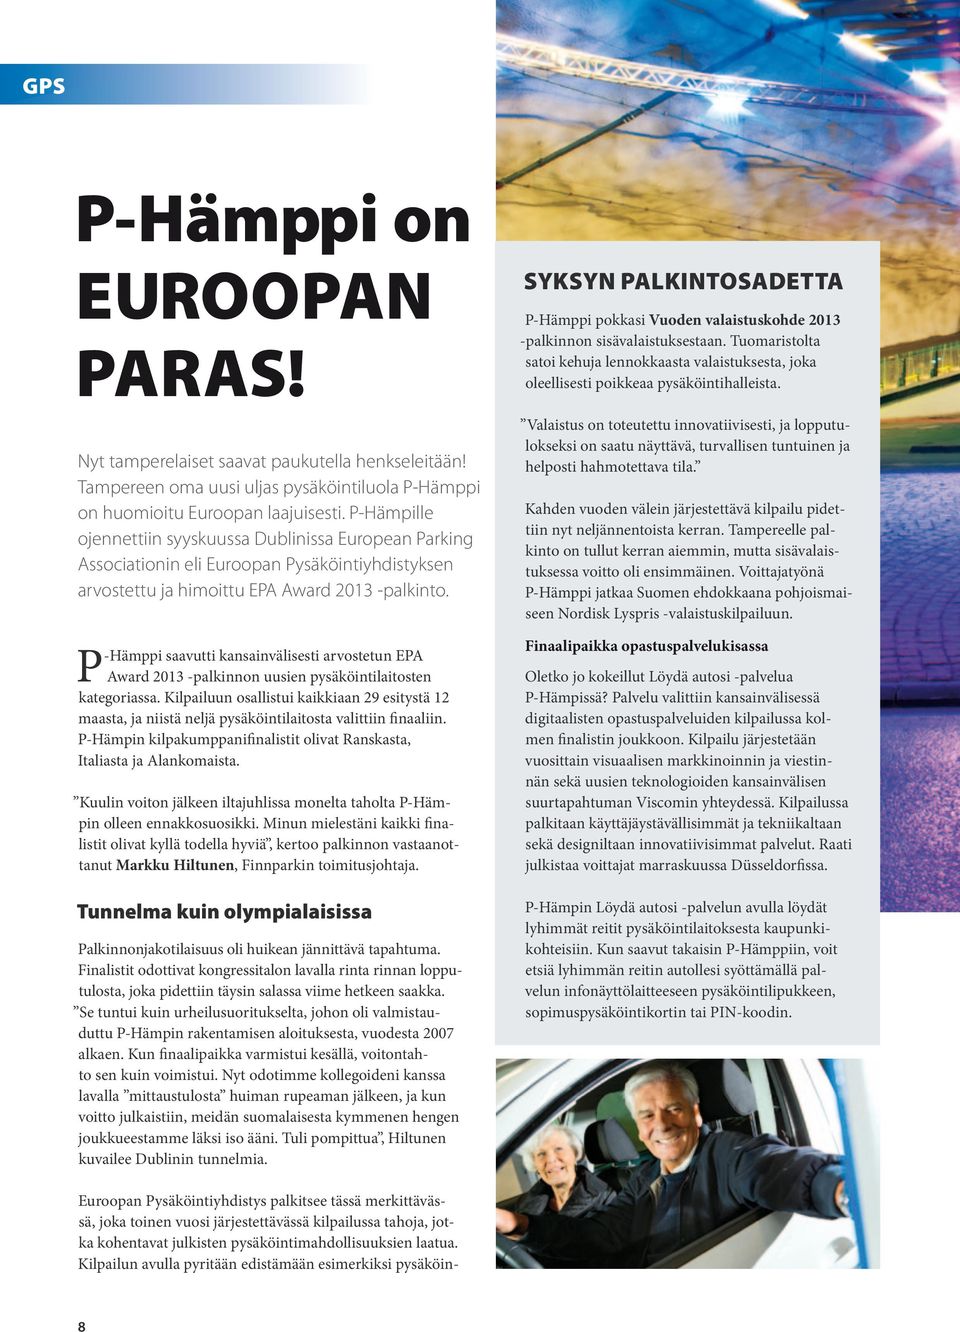 P-Hämppi saavutti kansainvälisesti arvostetun EPA Award 2013 -palkinnon uusien pysäköintilaitosten kategoriassa.